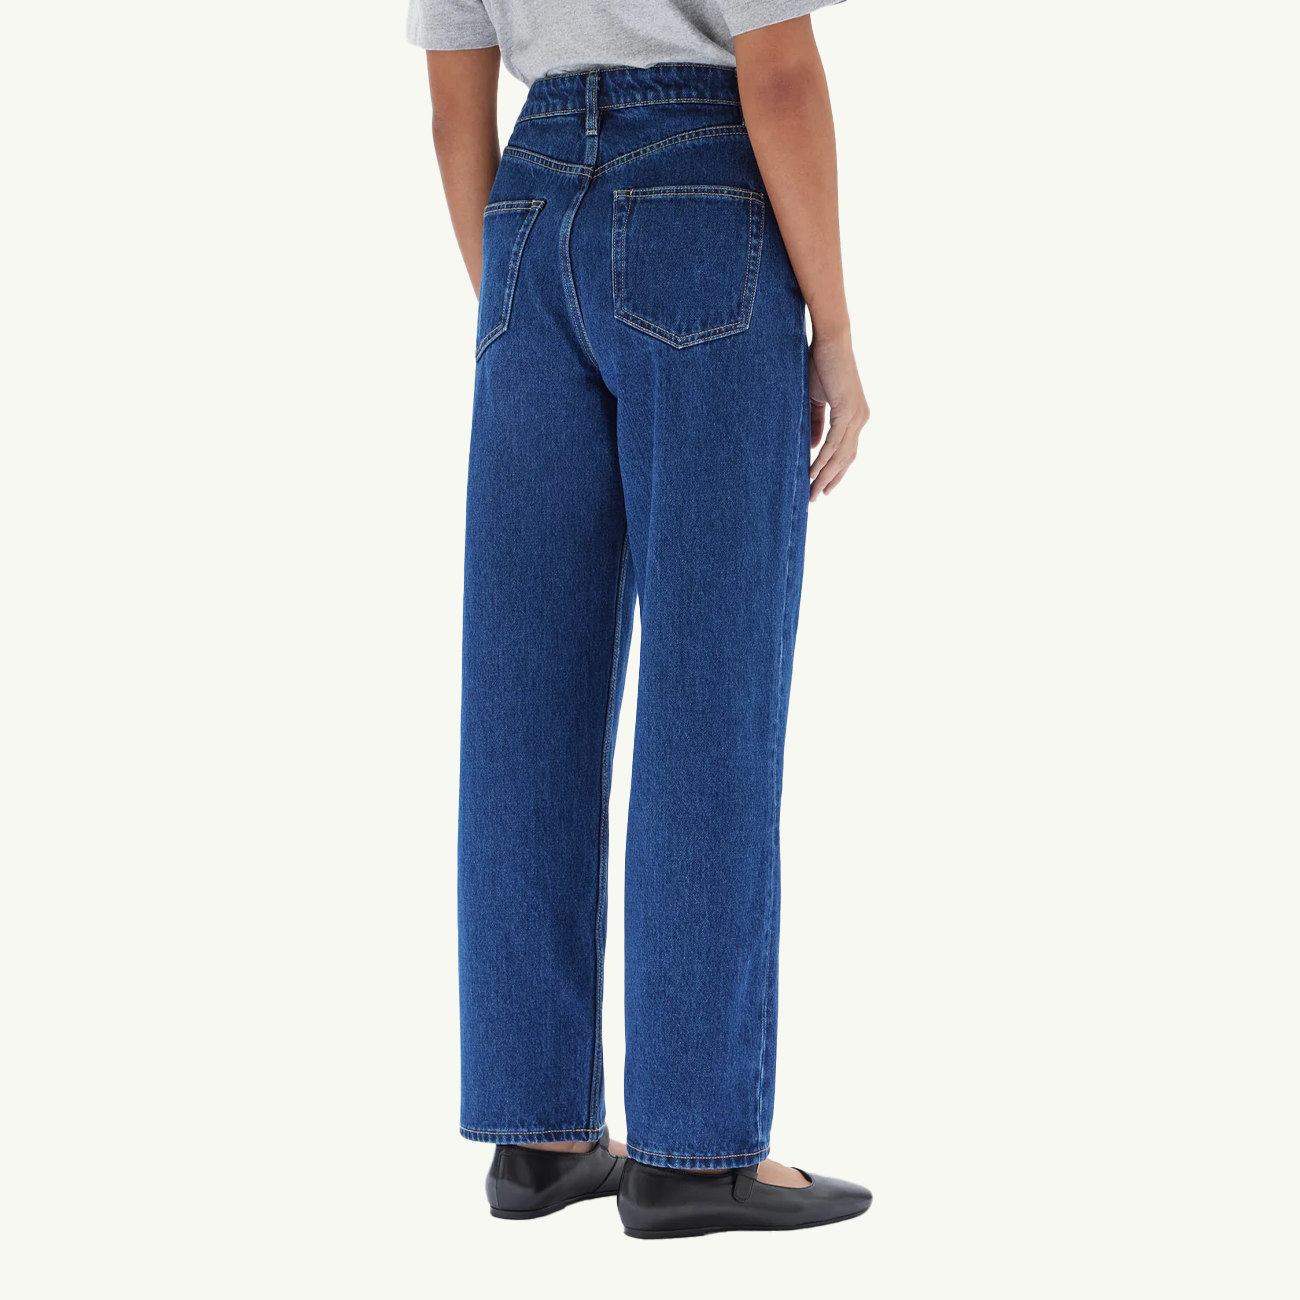 Vintage Straight Jean - Heritage Blue